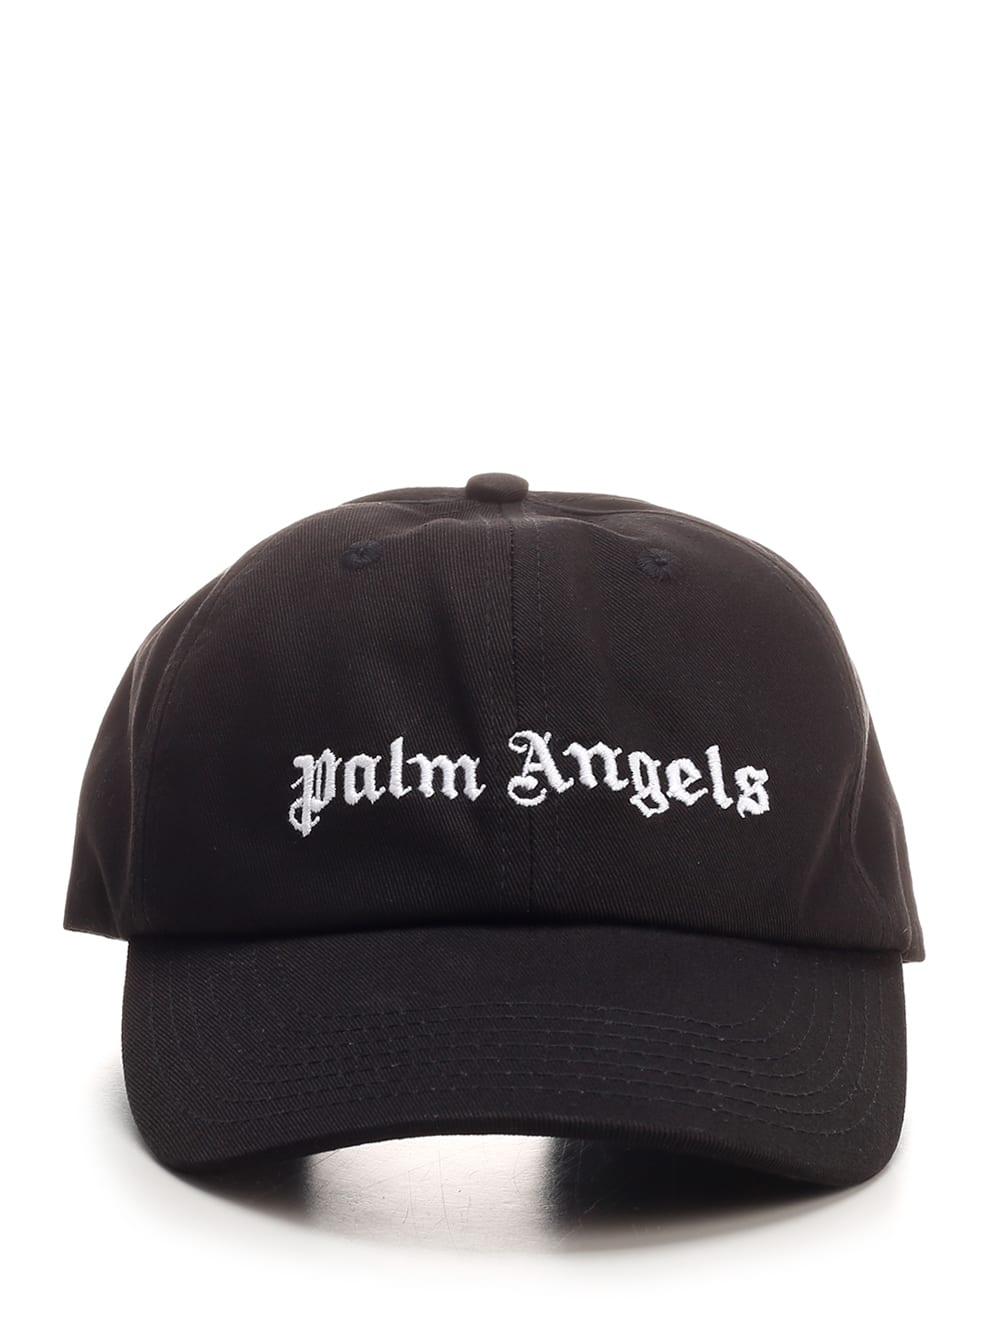 Palm Angels Black Classic Logo Baseball Cap